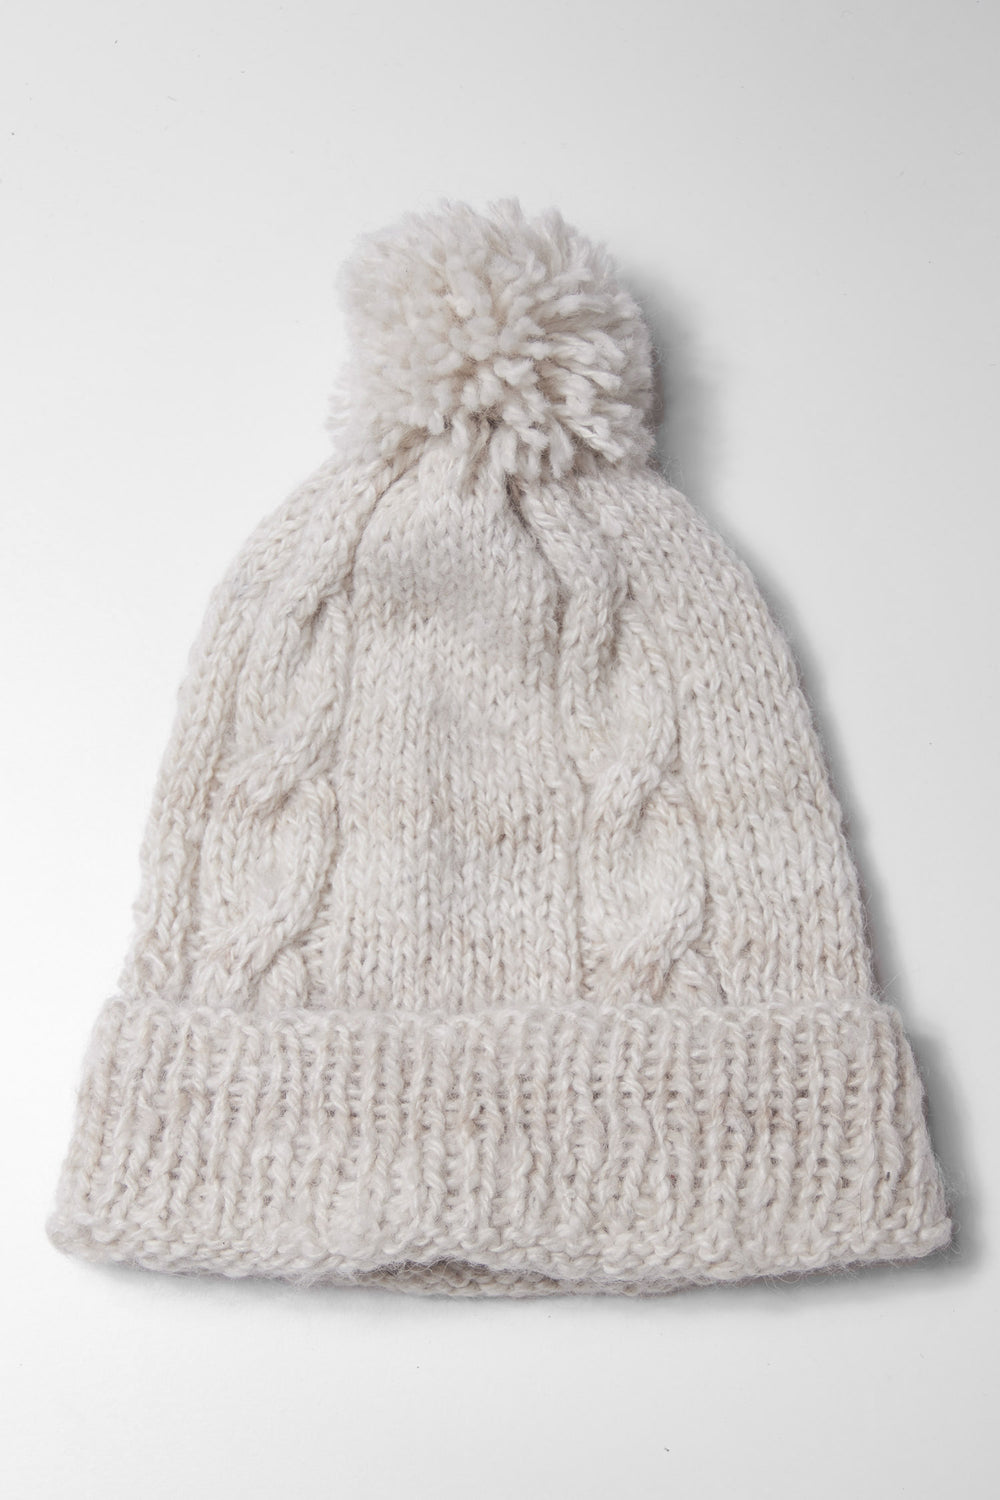 Handgemachte Mütze aus Alpaka in weißer Farbe.